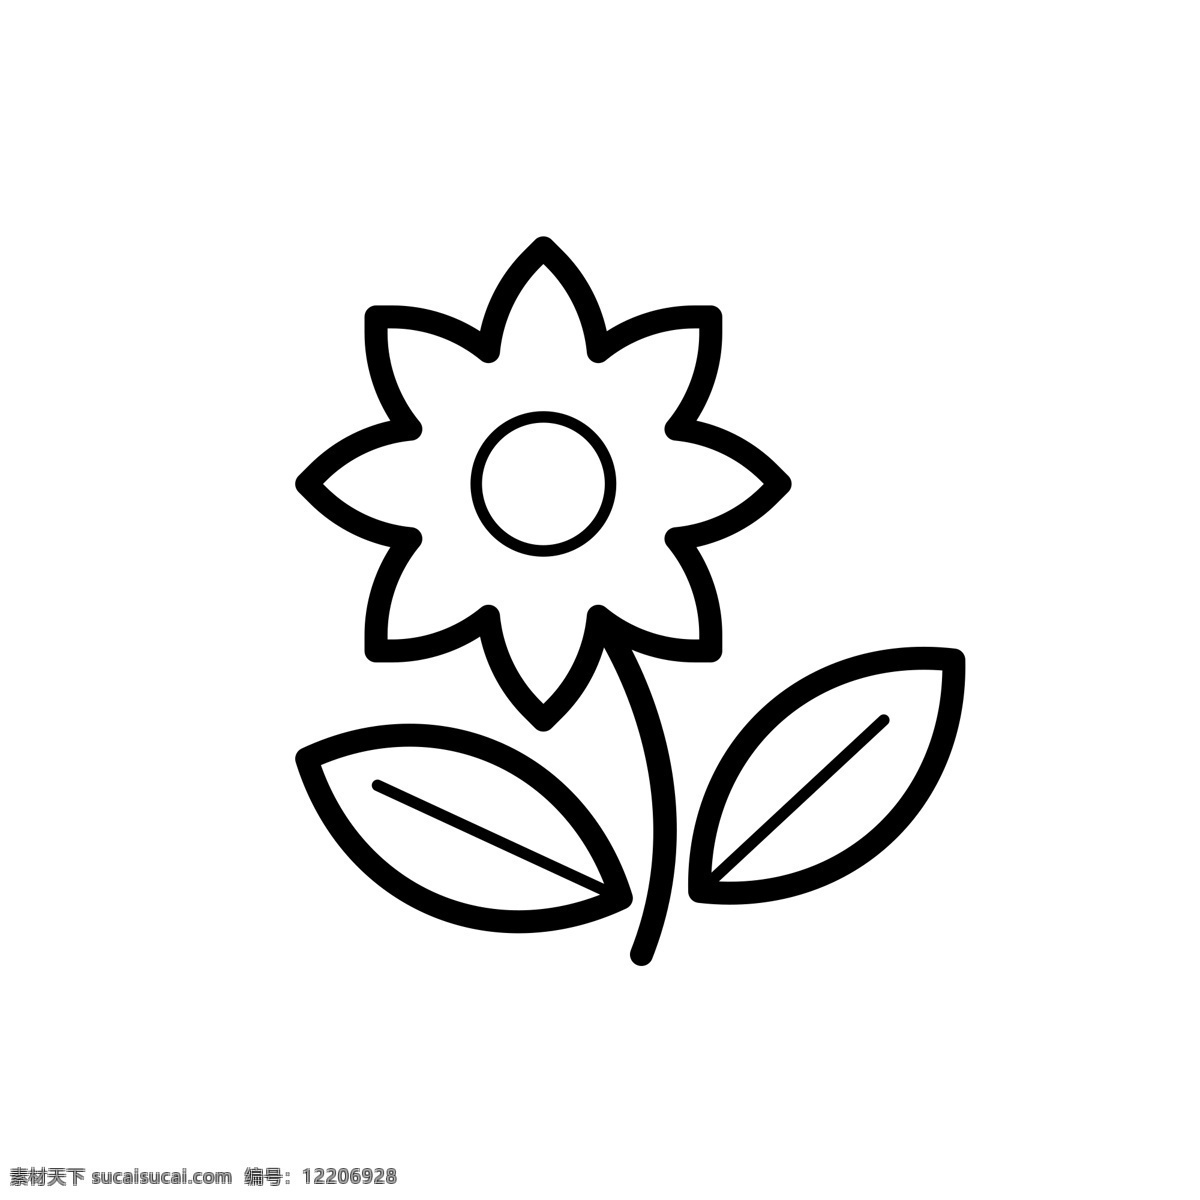 扁平化花朵 花朵 扁平化ui ui图标 手机图标 界面ui 网页ui h5图标